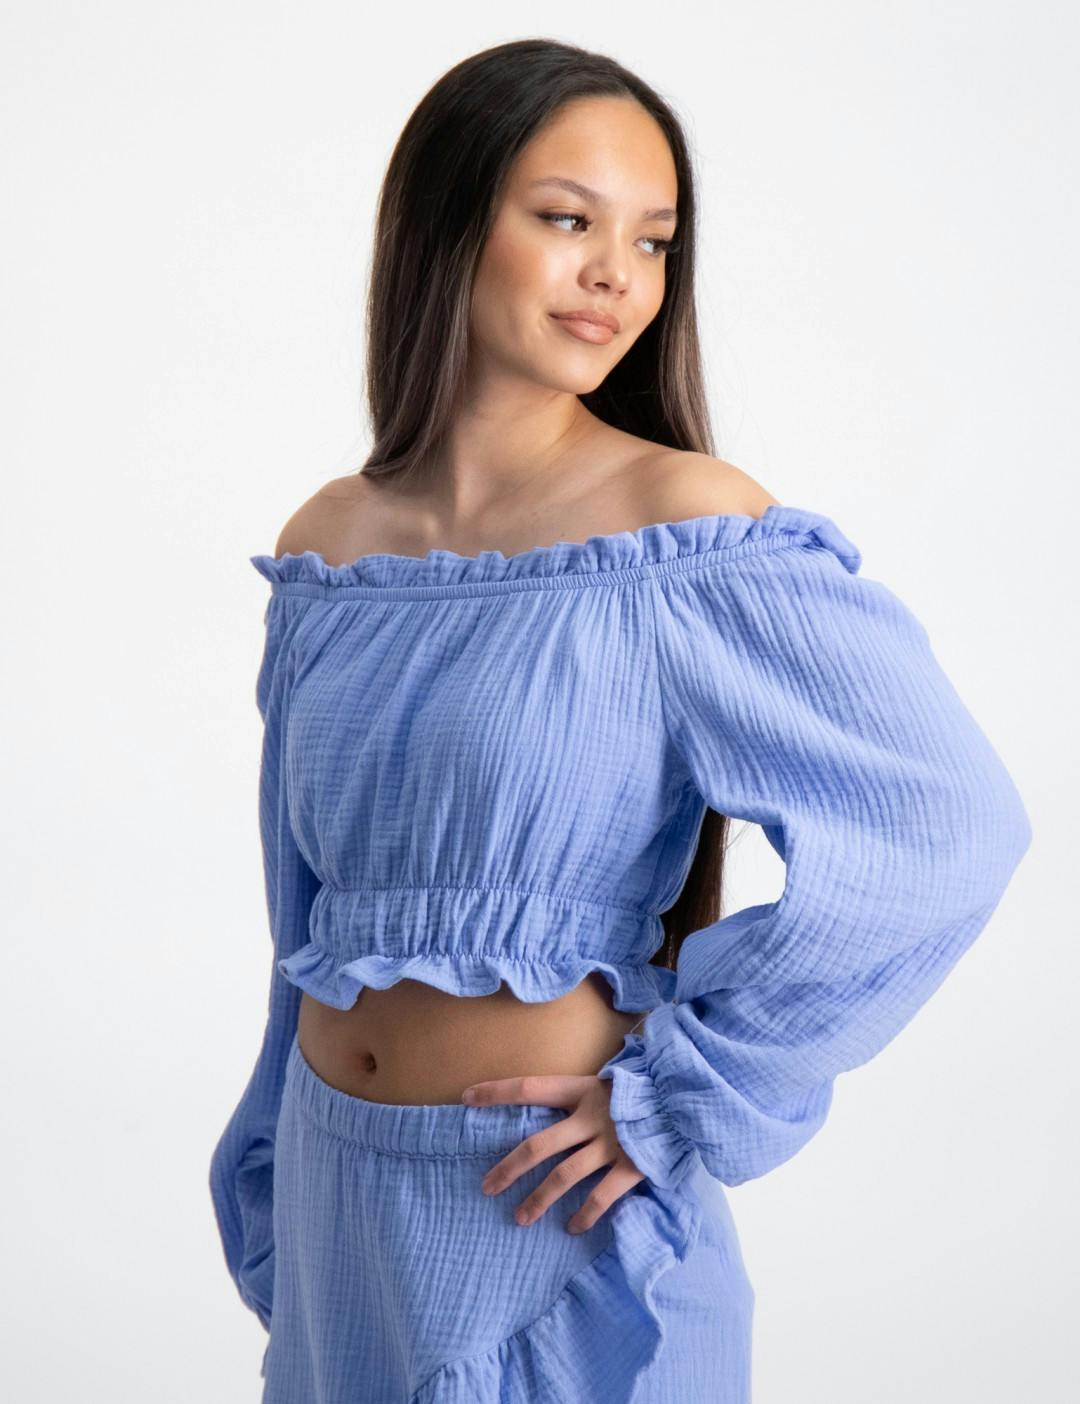 houding Oxideren hardop Blauw Y gauze off shoulder blouse voor Meisjes | Kids Brand Store